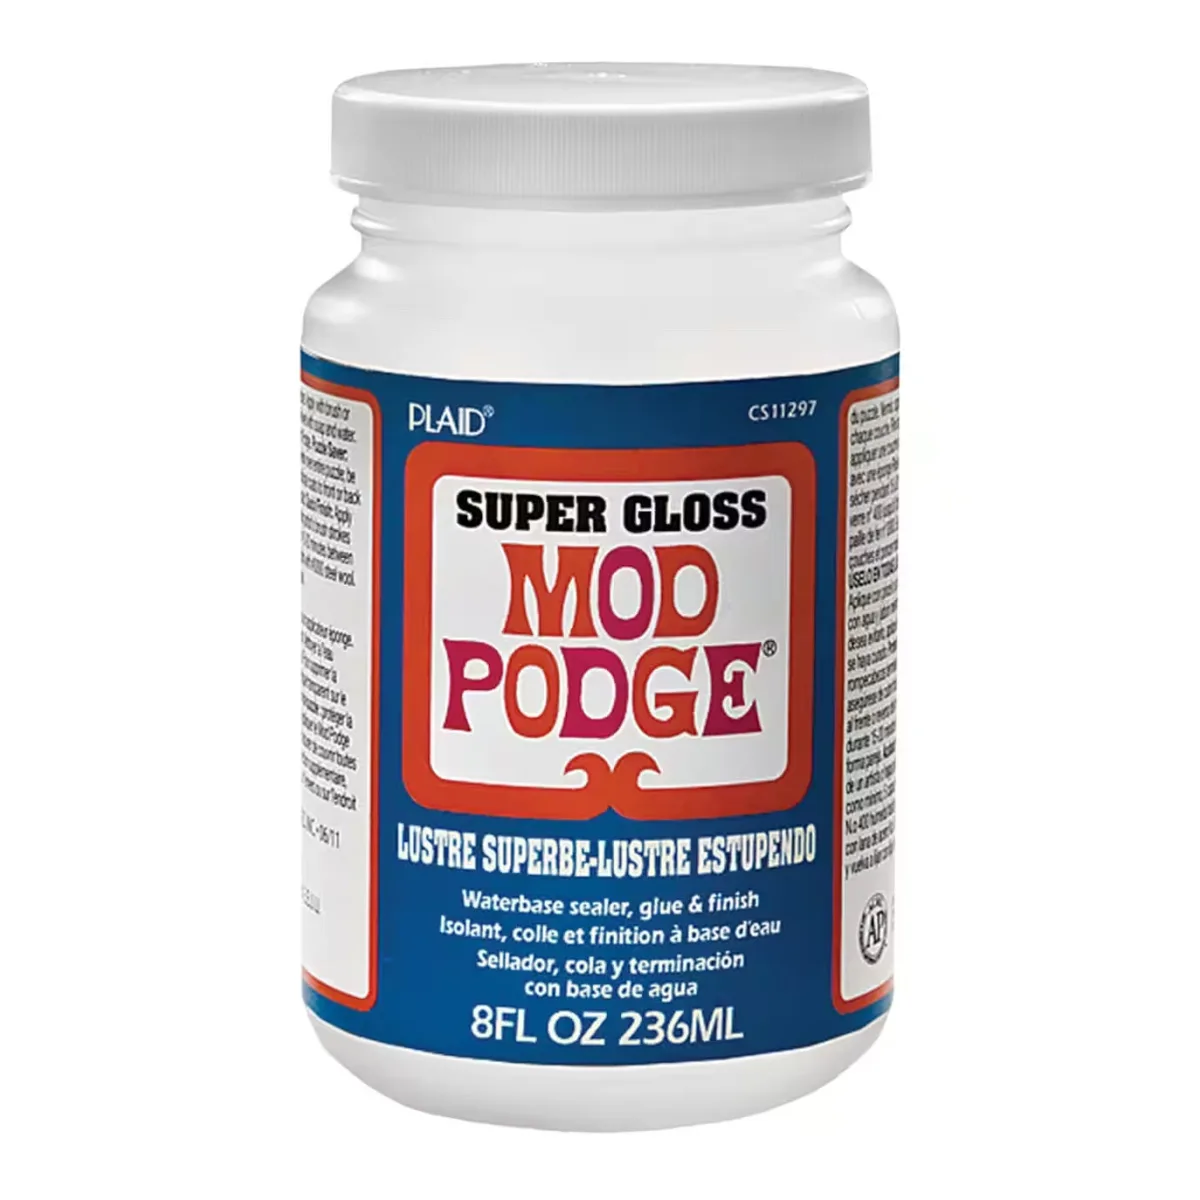 Super Matte Mod Podge: Your Complete Guide! - Mod Podge Rocks